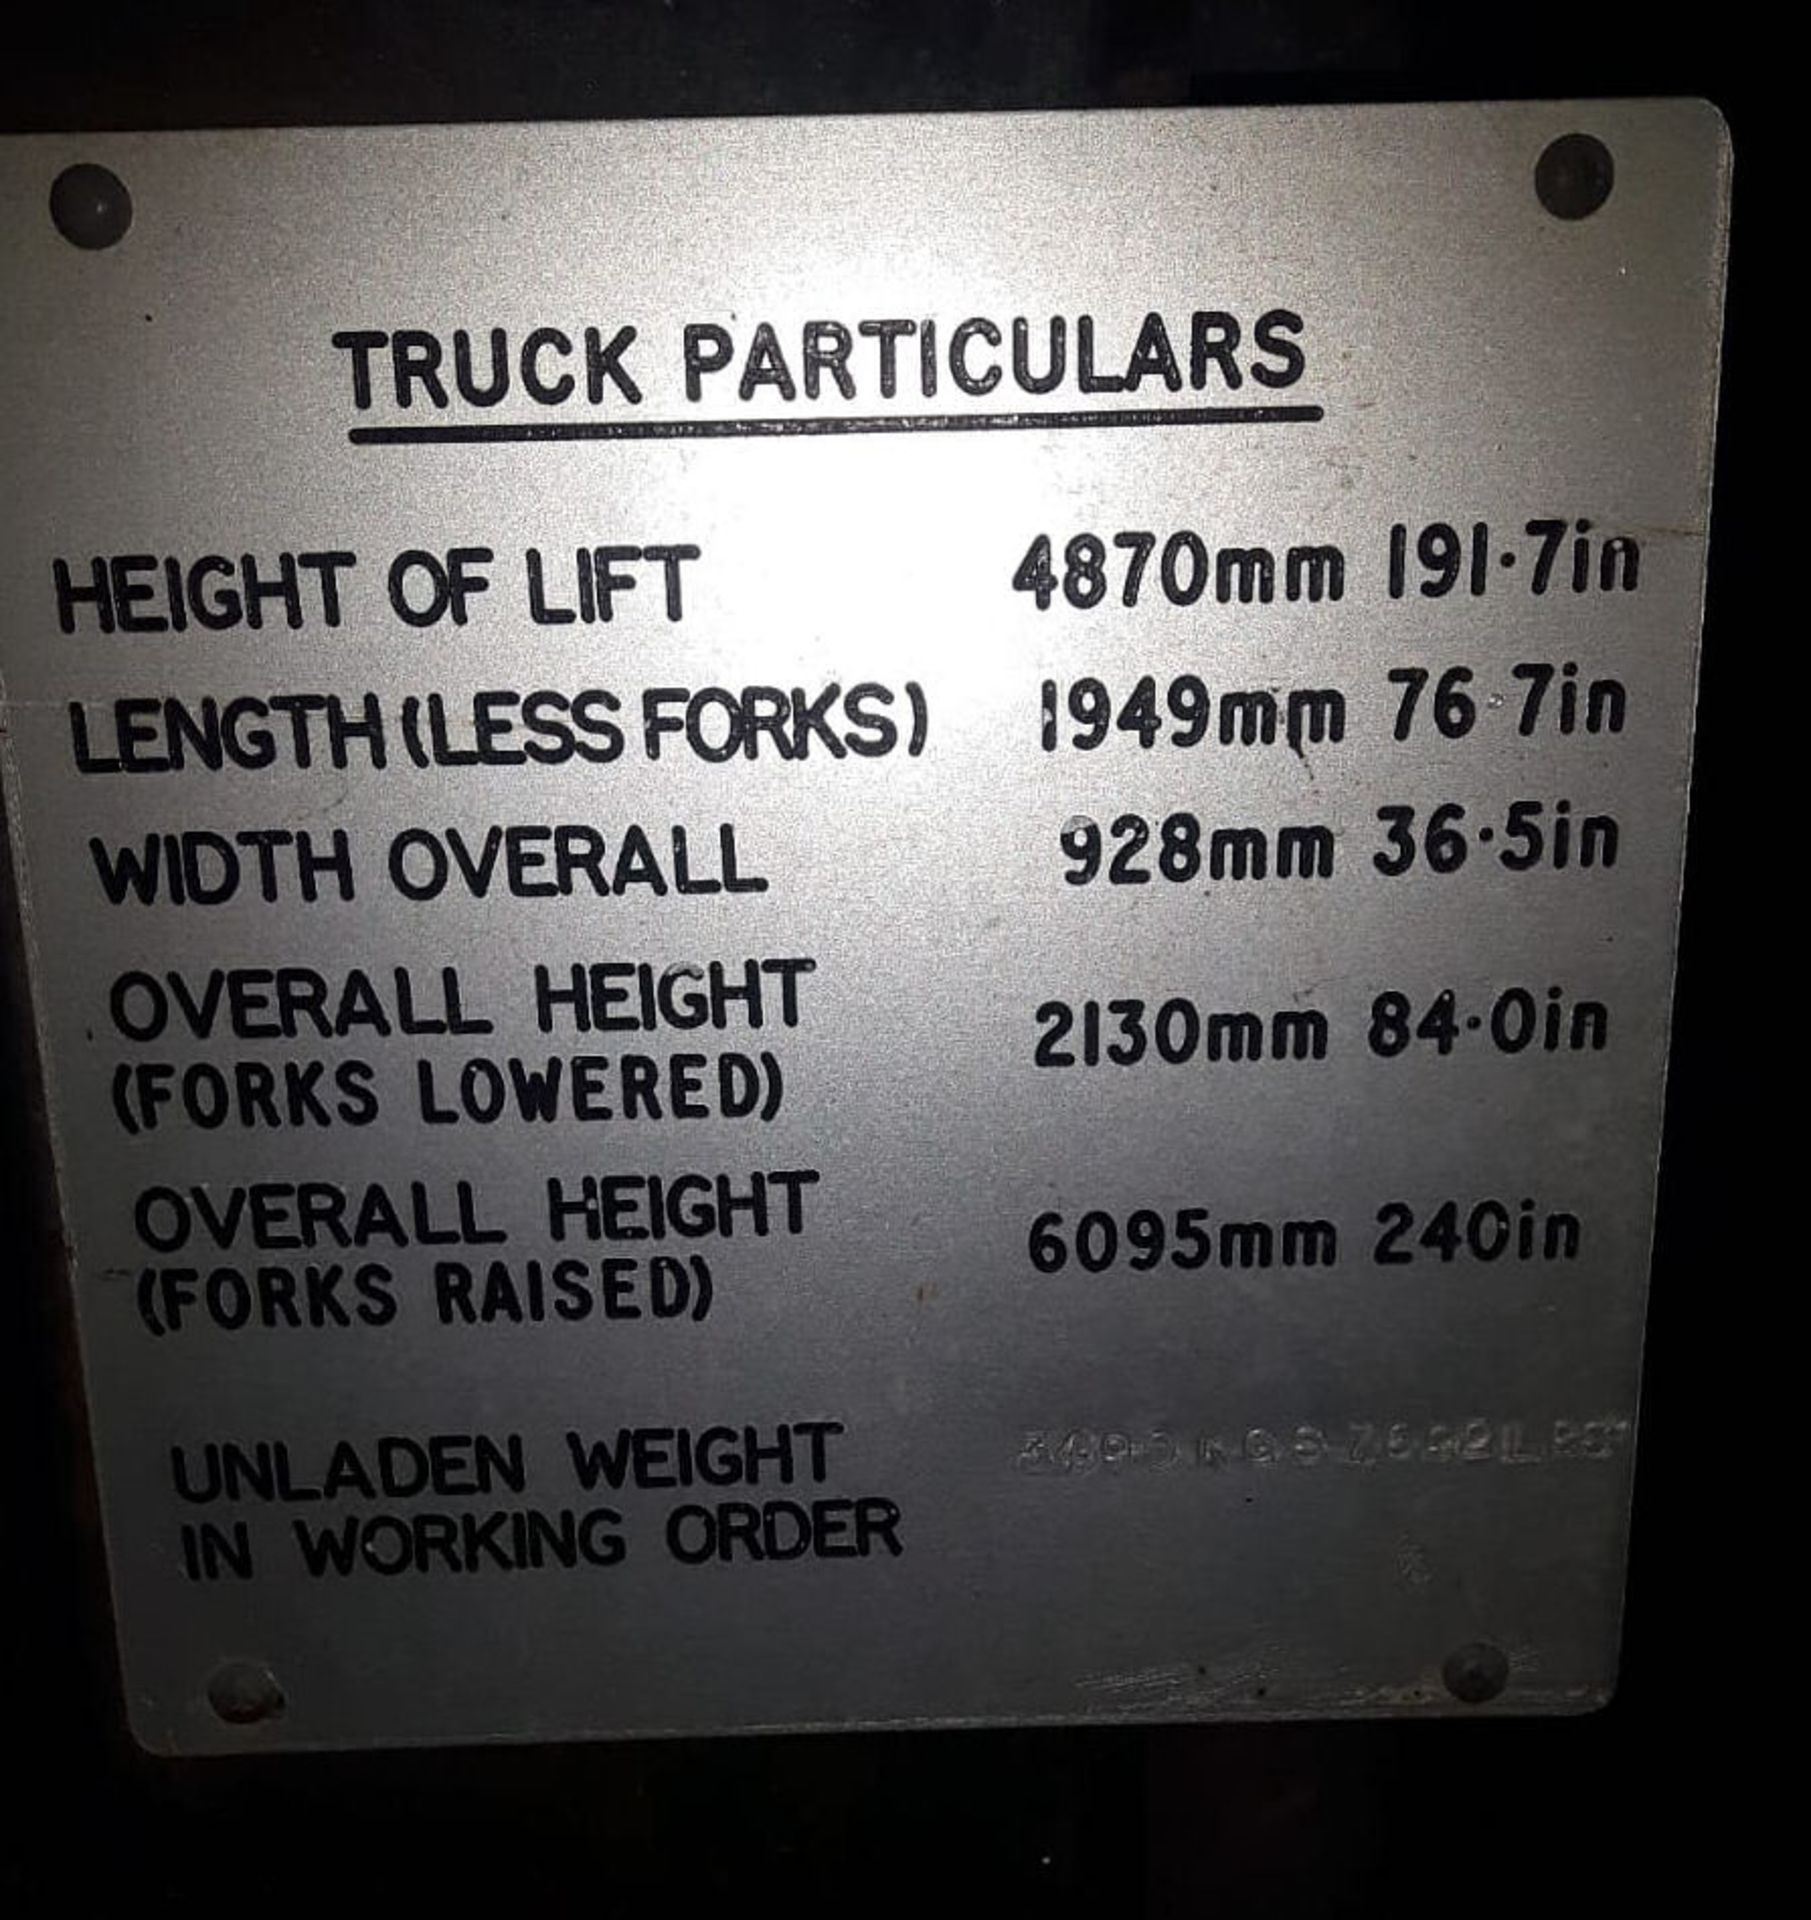 1988 Hyster 1200Kg Electric Counterbalance Forklift Truck - 1451 Hours - PLEASE READ DESCRIPTION - - Bild 28 aus 28